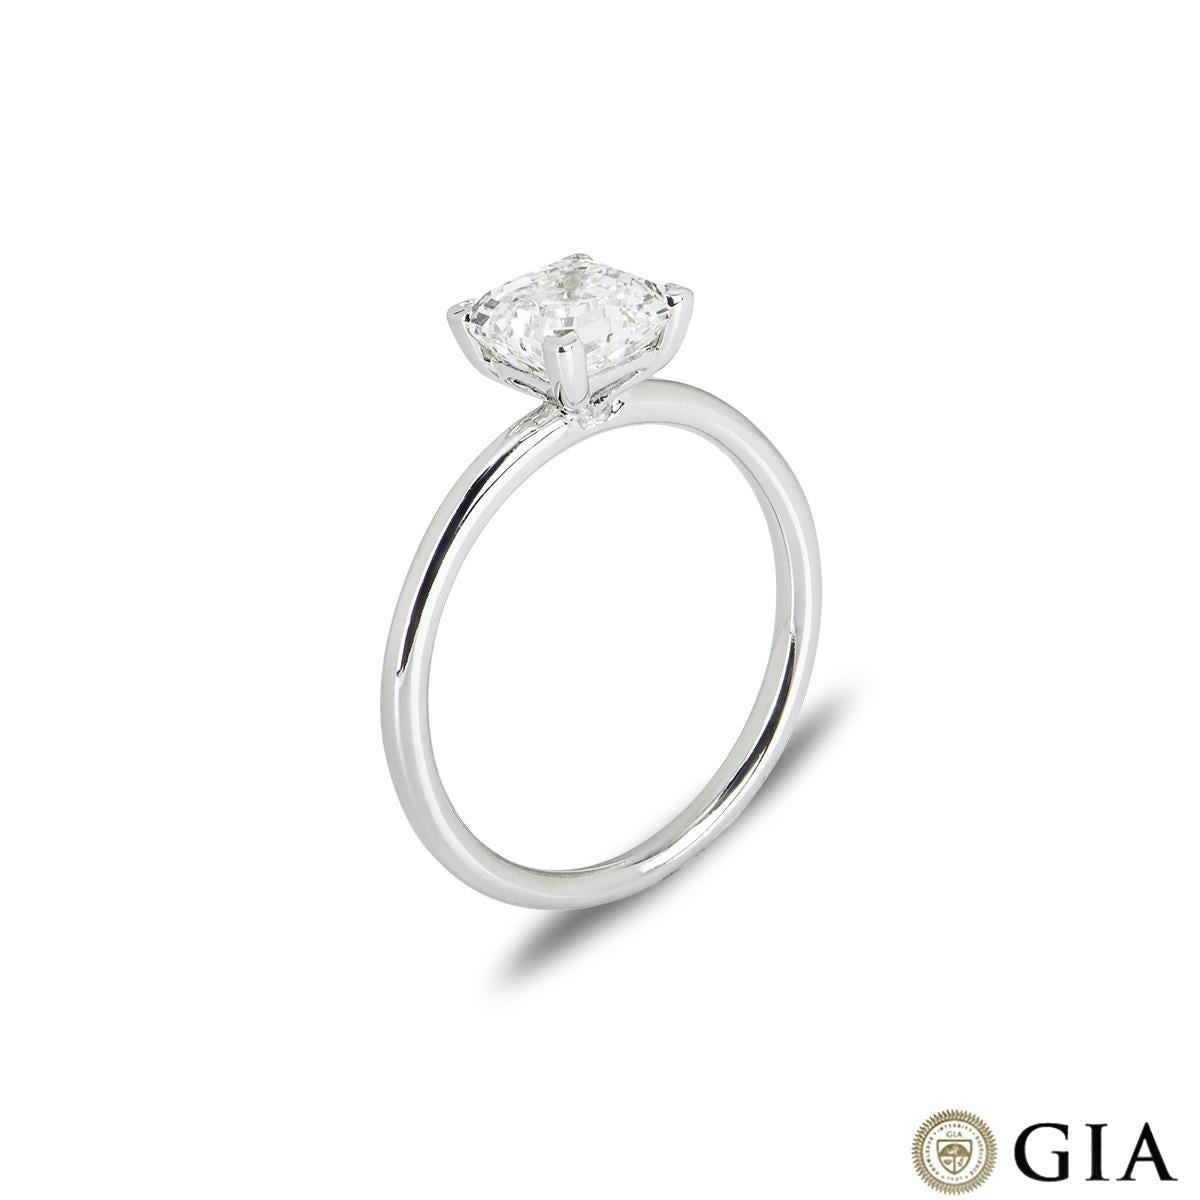 Une bague de fiançailles en or blanc 18k avec un diamant, d'une beauté saisissante. Le solitaire présente un diamant de taille Asscher dans une monture à quatre griffes pesant 1,50 ct, de couleur I et de pureté SI1. La bague mesure 1,70 mm de large,